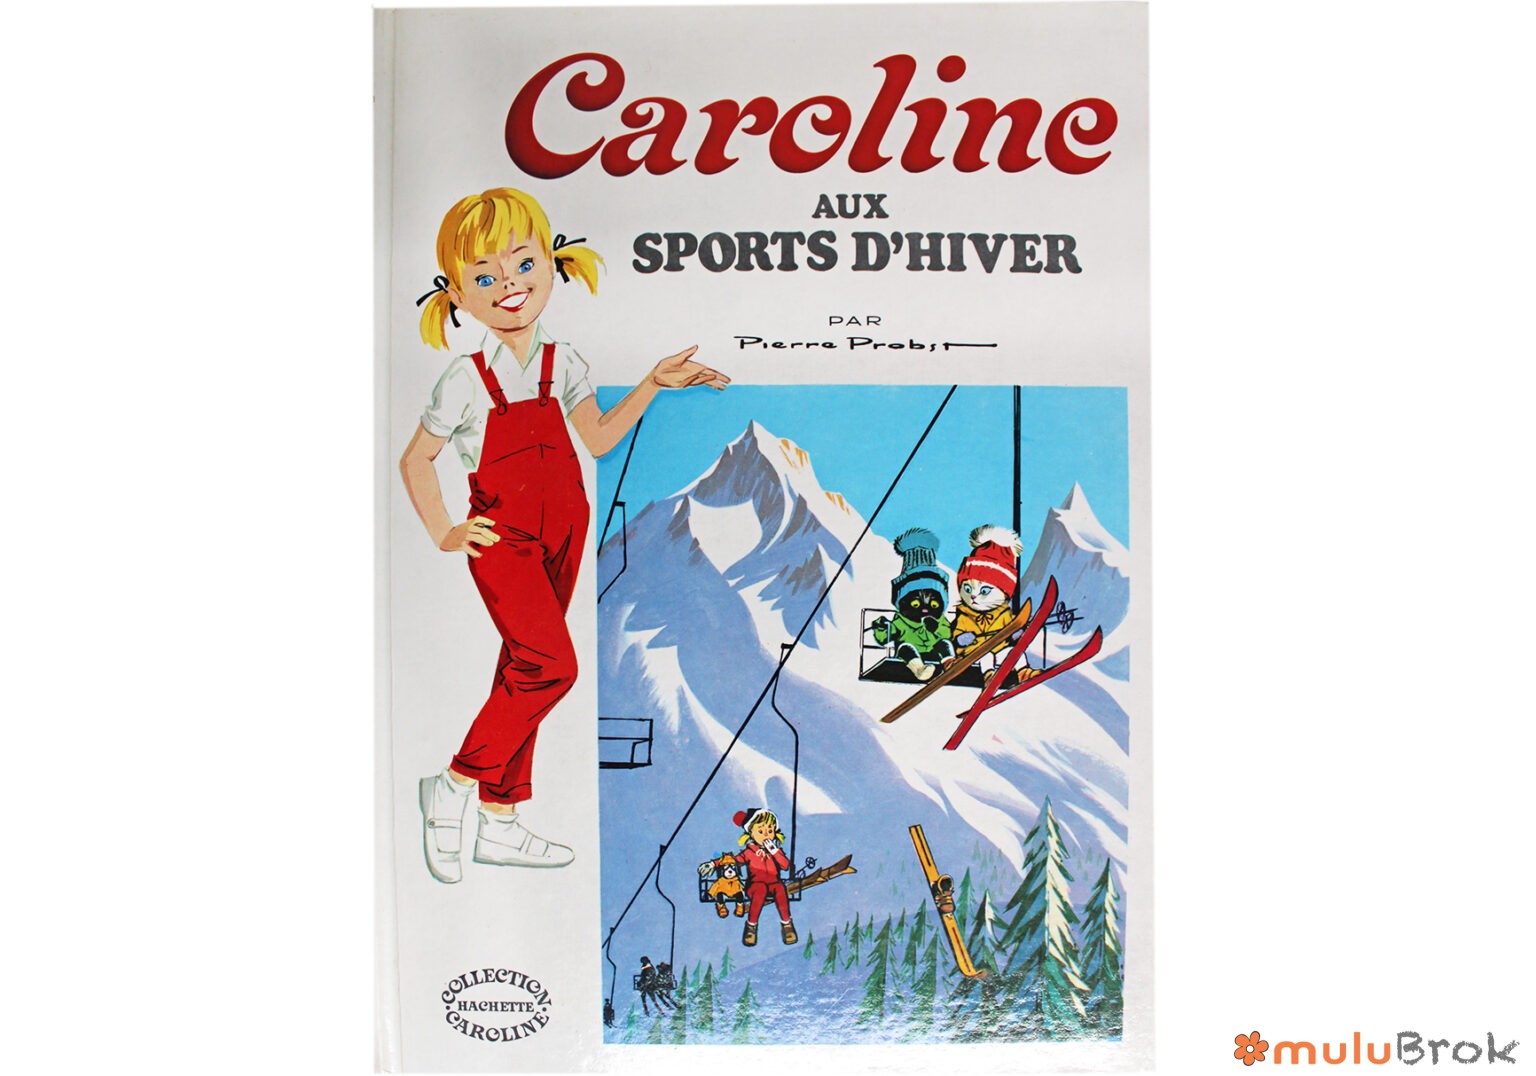 Caroline aux sports d’hiver